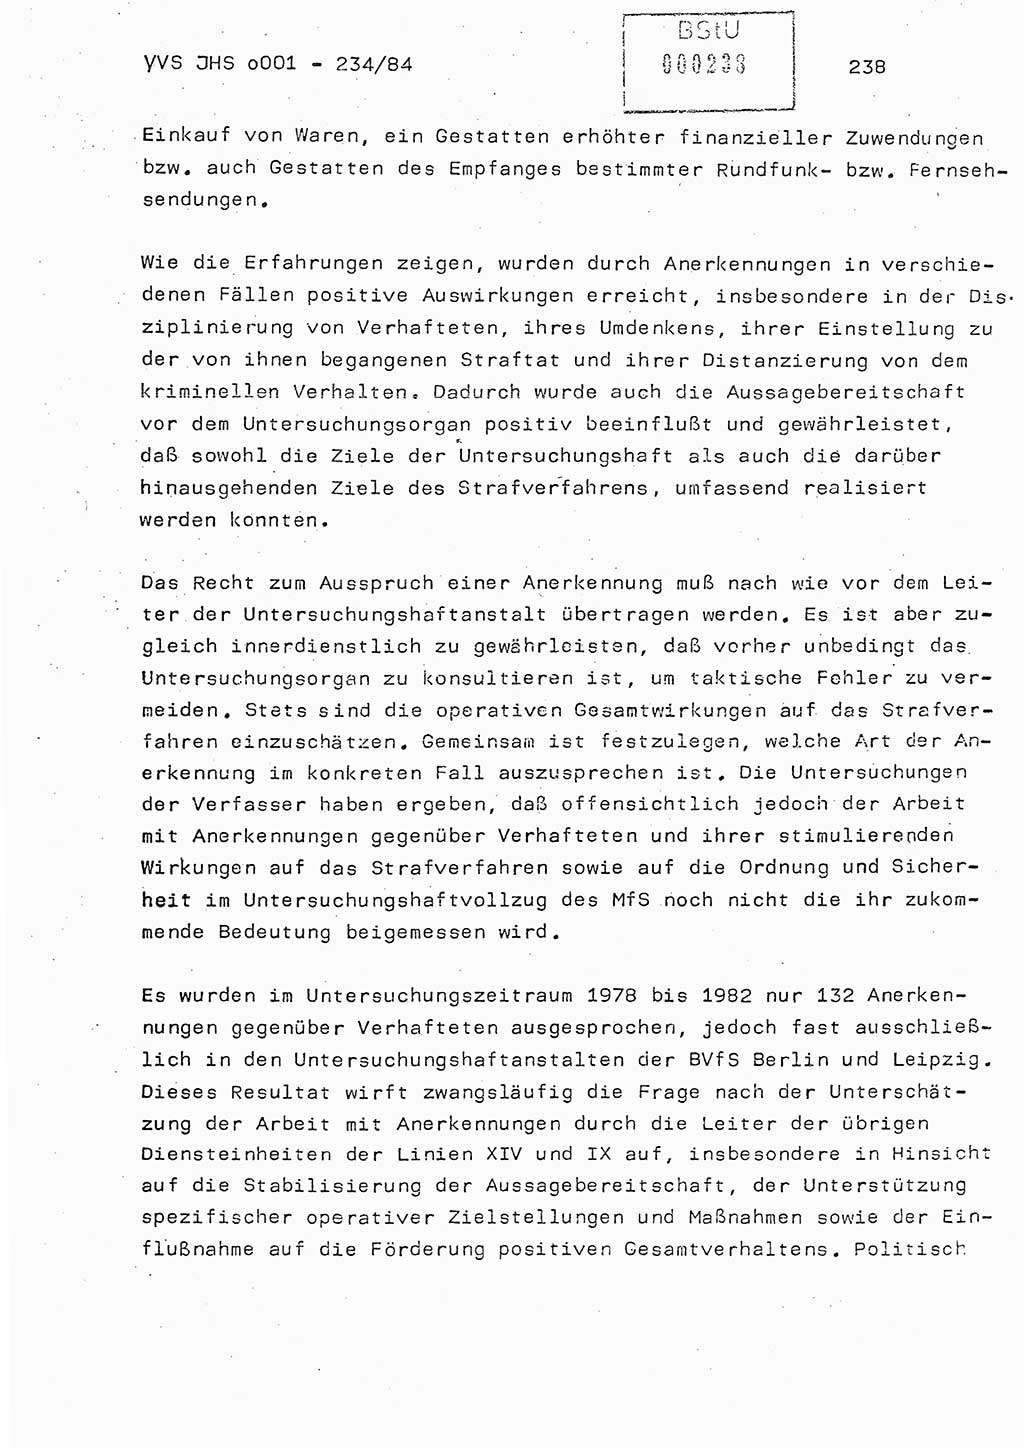 Dissertation Oberst Siegfried Rataizick (Abt. ⅩⅣ), Oberstleutnant Volkmar Heinz (Abt. ⅩⅣ), Oberstleutnant Werner Stein (HA Ⅸ), Hauptmann Heinz Conrad (JHS), Ministerium für Staatssicherheit (MfS) [Deutsche Demokratische Republik (DDR)], Juristische Hochschule (JHS), Vertrauliche Verschlußsache (VVS) o001-234/84, Potsdam 1984, Seite 238 (Diss. MfS DDR JHS VVS o001-234/84 1984, S. 238)